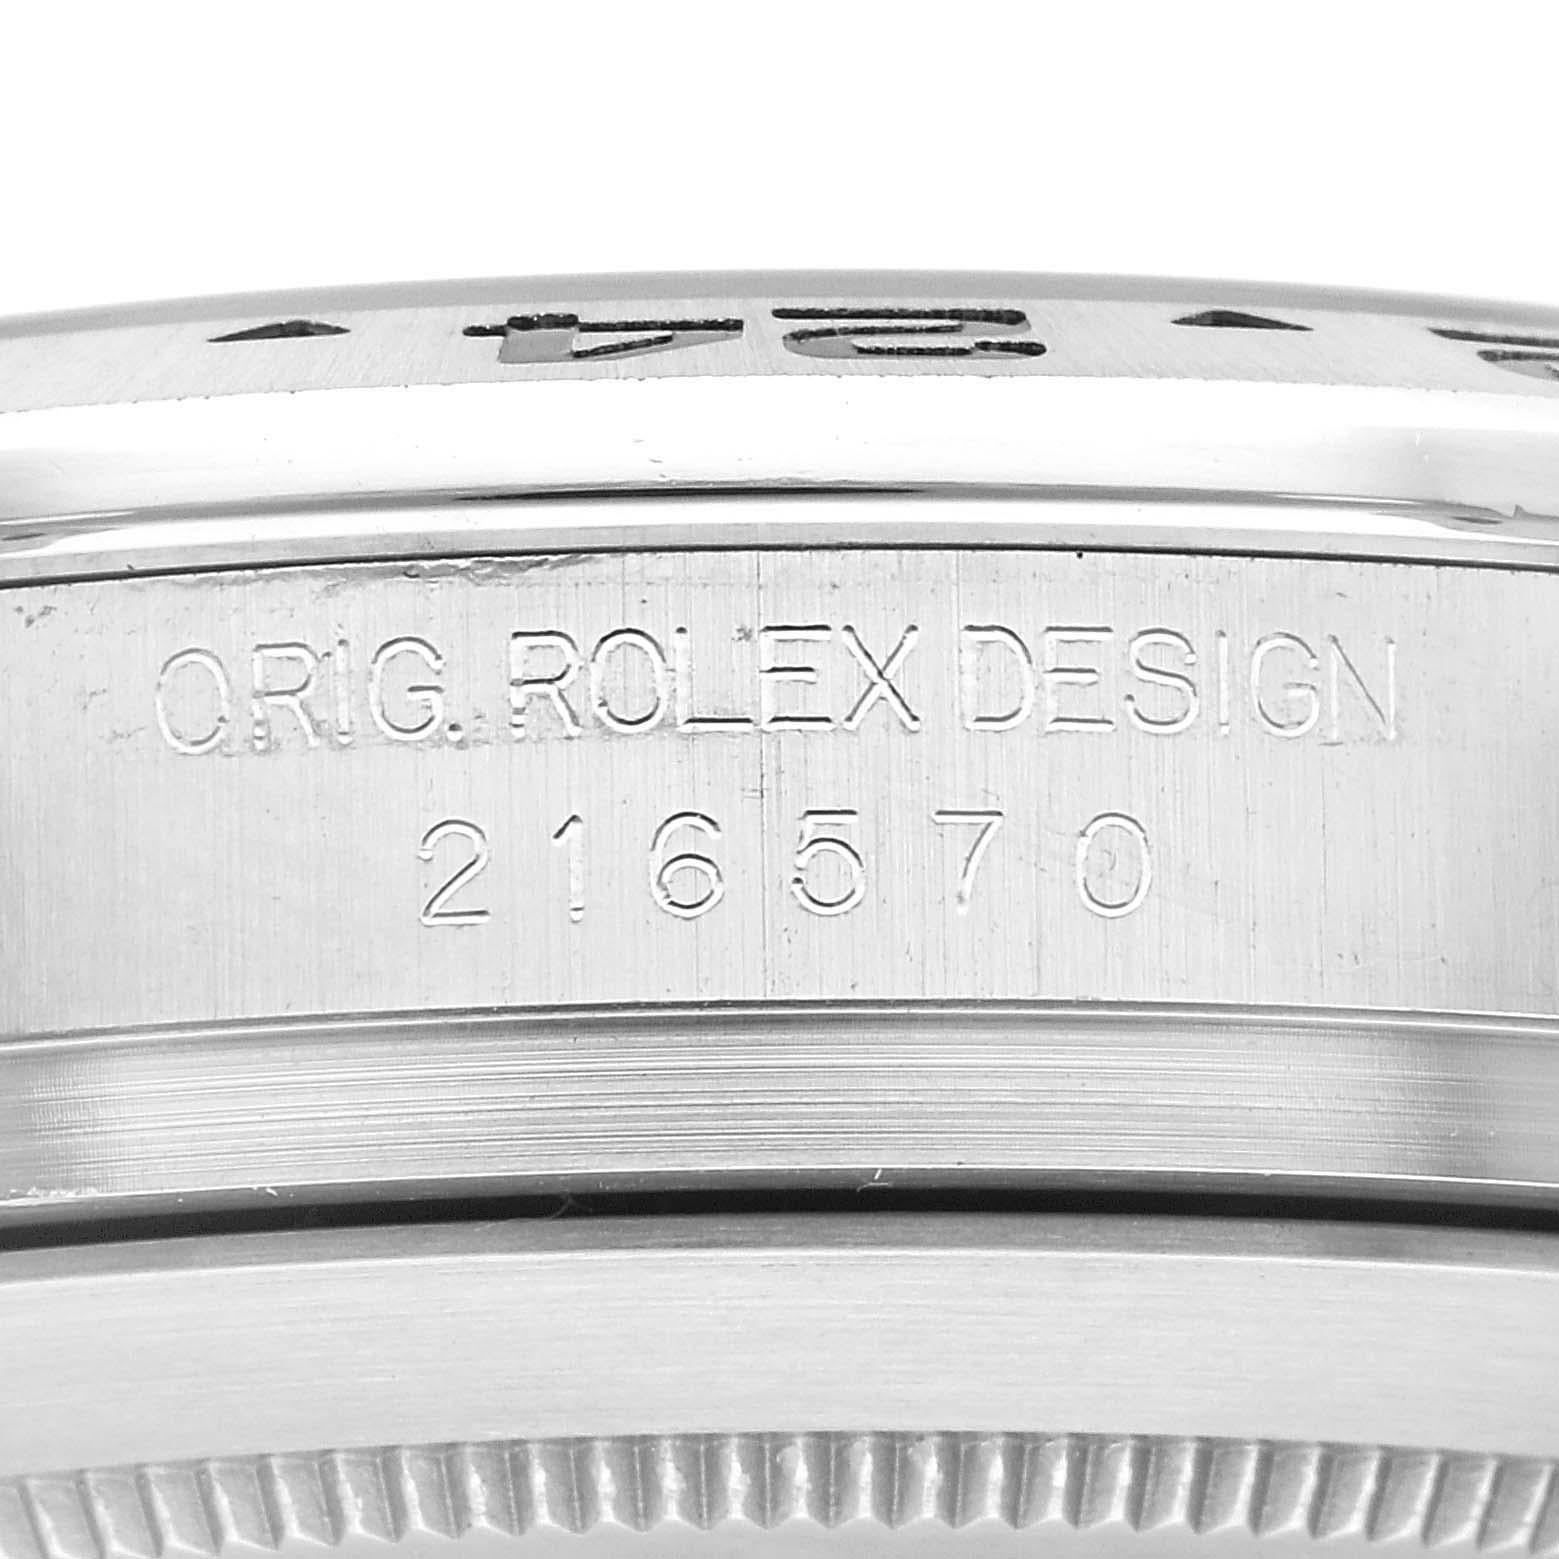 Rolex Explorer II Weißes Zifferblatt Orange Hand Stahl Herrenuhr 216570 Box Karte. Offiziell zertifiziertes Chronometerwerk mit automatischem Aufzug. Gehäuse aus Edelstahl mit einem Durchmesser von 42.0 mm. Rolex Logo auf einer Krone. Lünette mit